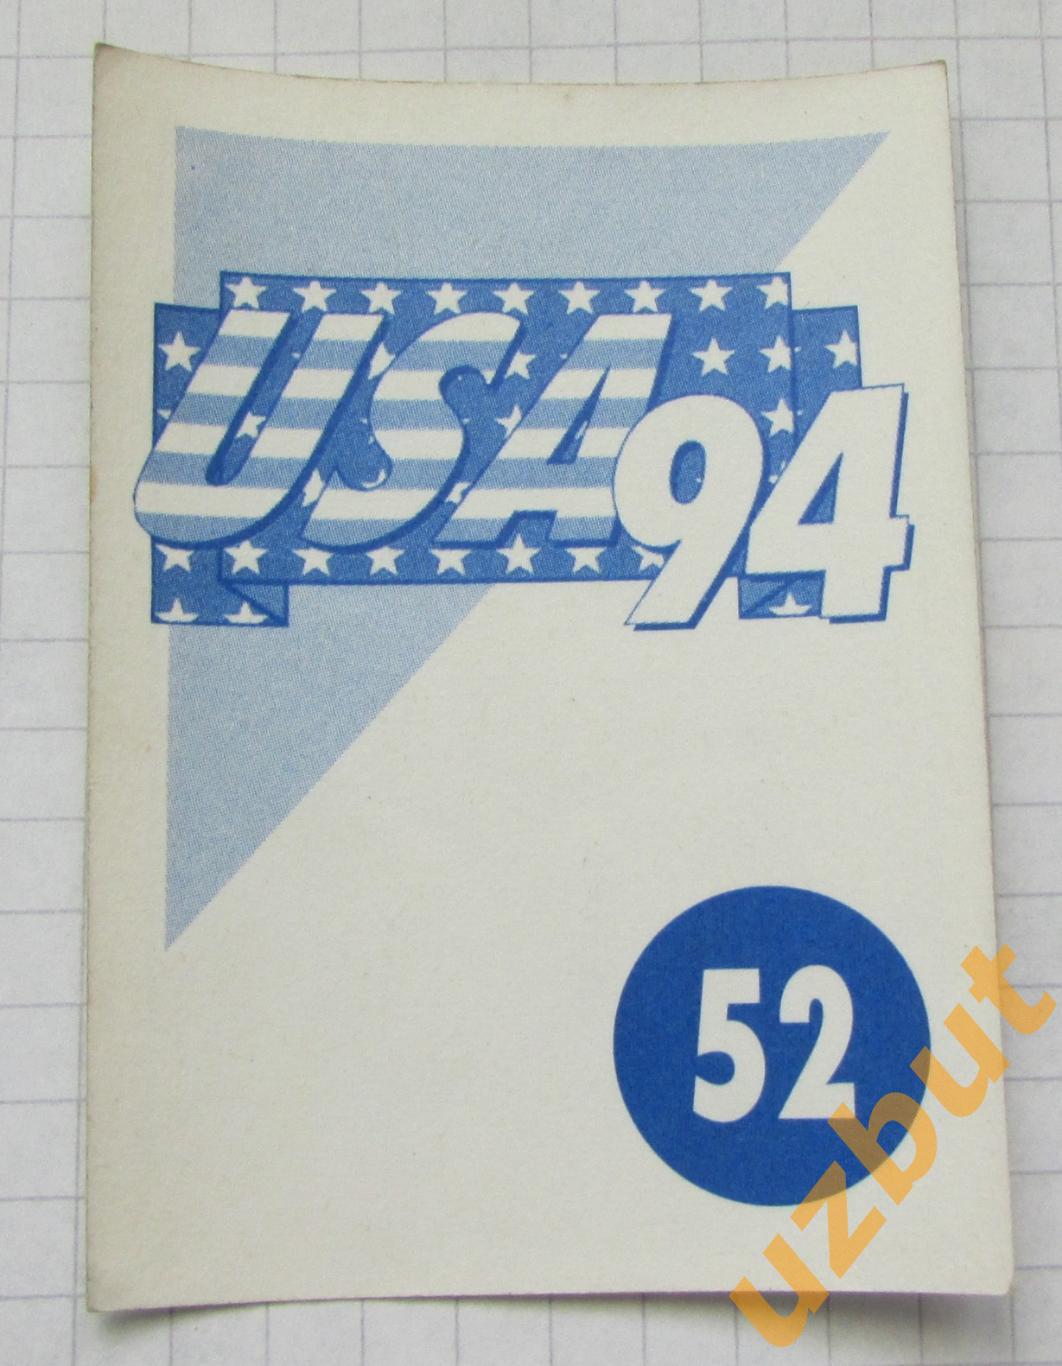 Наклейка Тибор Шеймеш Румыния № 52 Euroflash ЧМ 1994 США 1